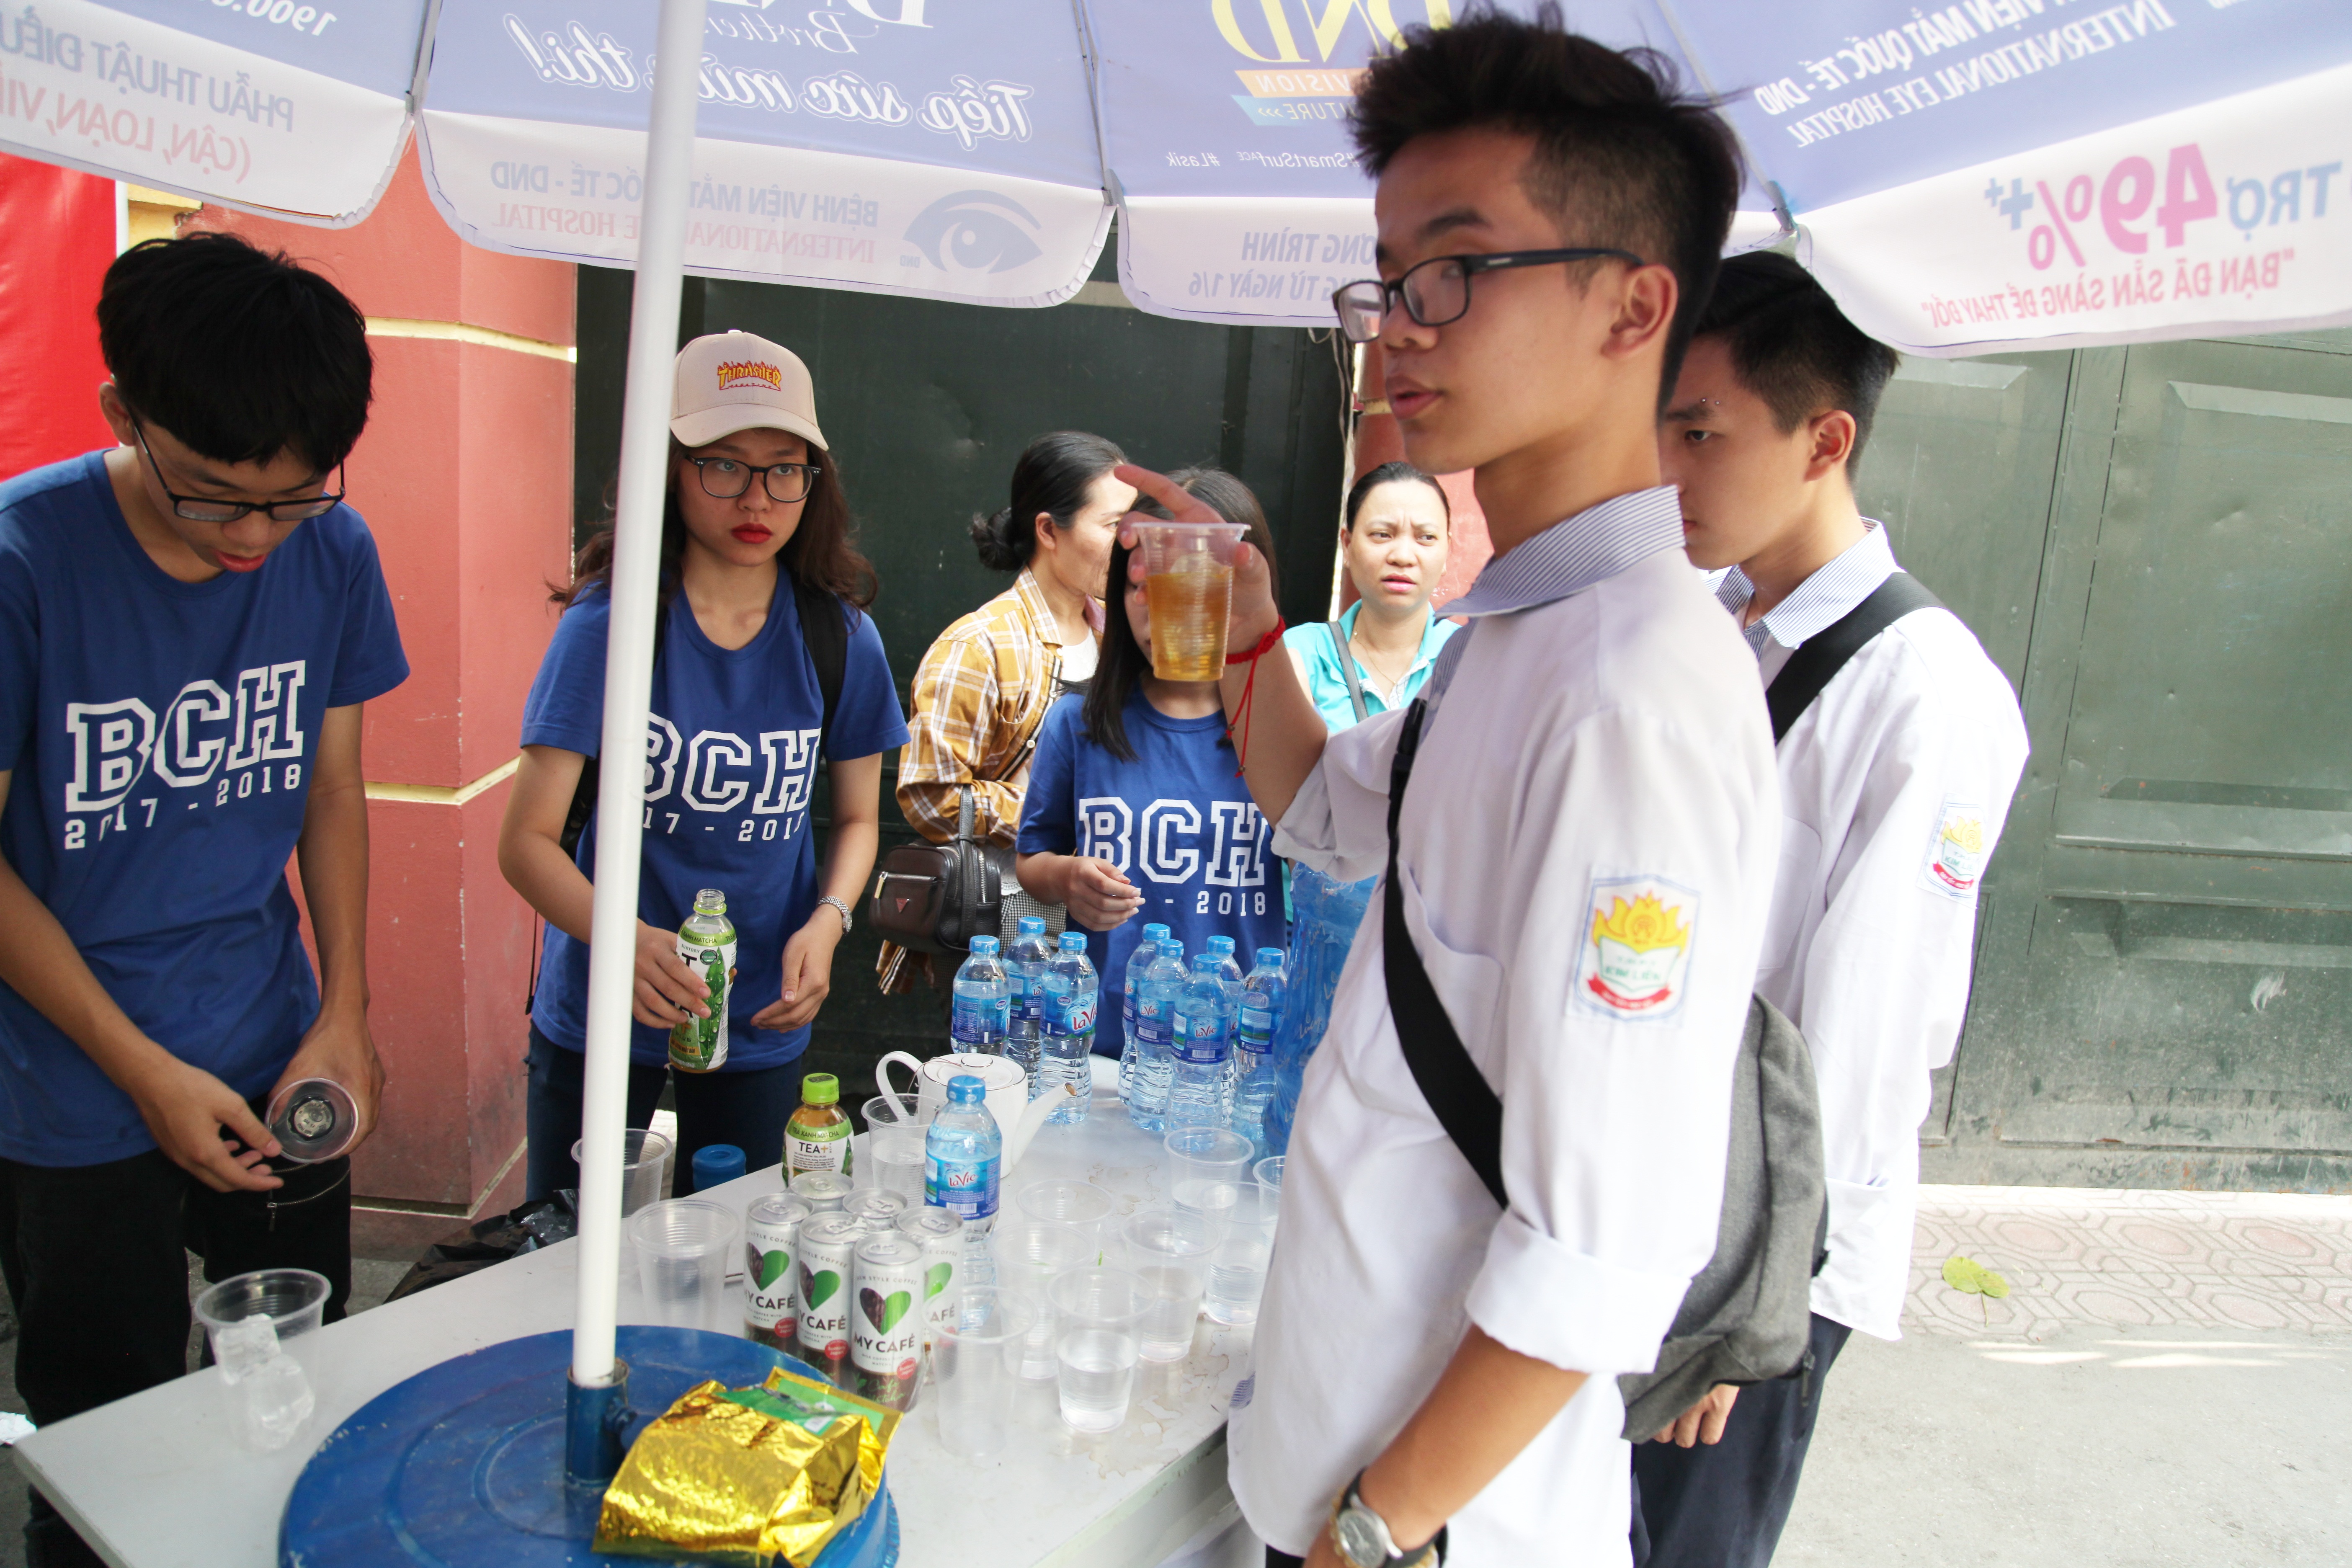 Tại nhiều điểm thi, Ban chấp hành Đoàn Thanh Niên đã hỗ trợ nước uống, khăn giấy và quạt mát miễn phí cho cả phụ huynh và học sinh.